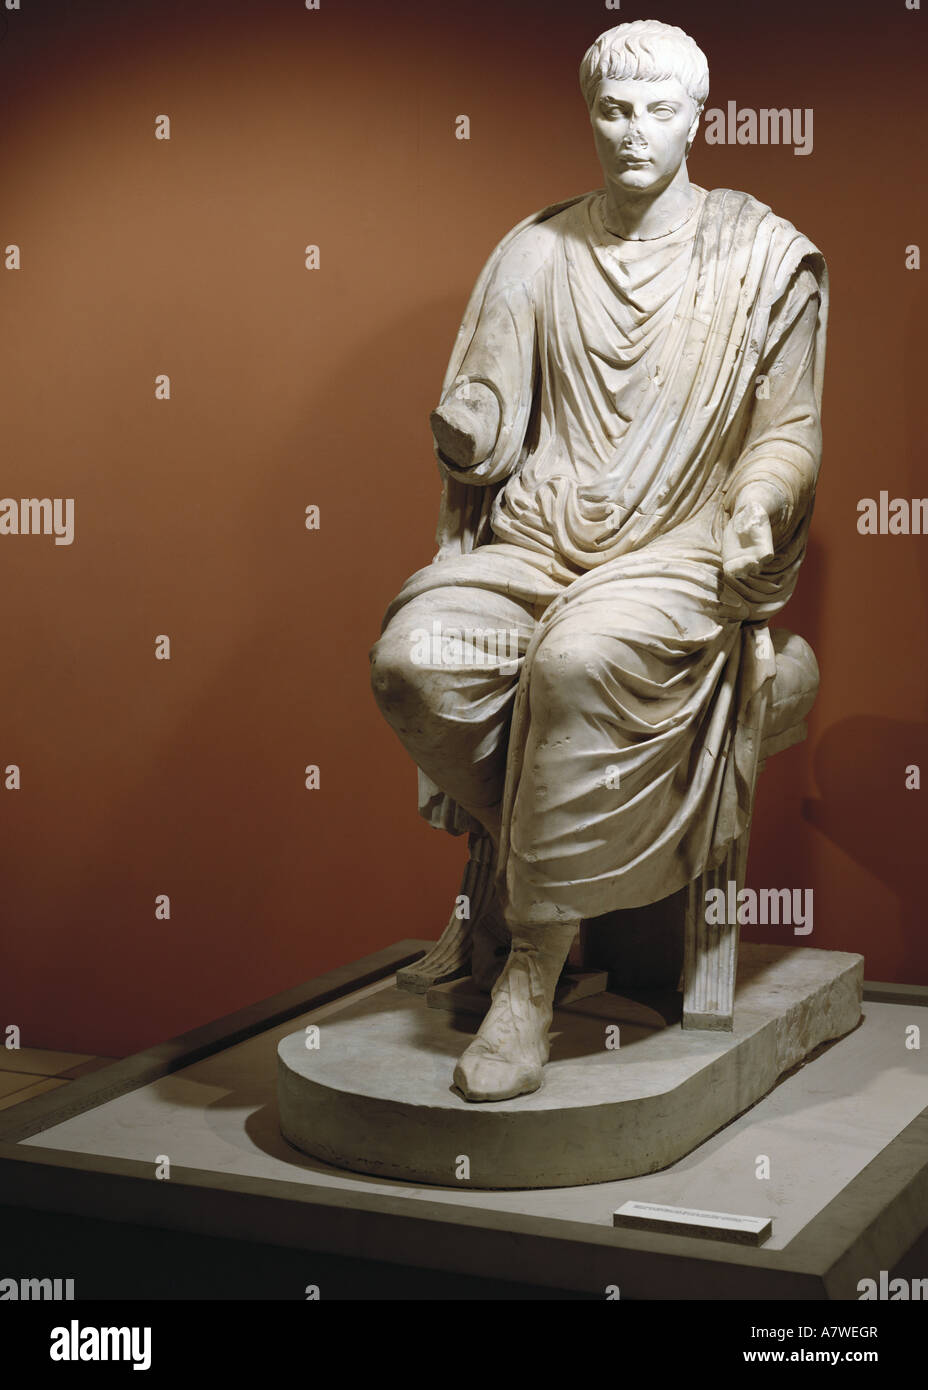 Beaux-arts, antiquité, Empire romain, sculpture, statue d'un homme assis,  probablement l'empereur Claudius (qui régna de 41 à 54 Ma), marbre, souabe,  1er siècle, l'artiste a le droit d'auteur , de ne pas